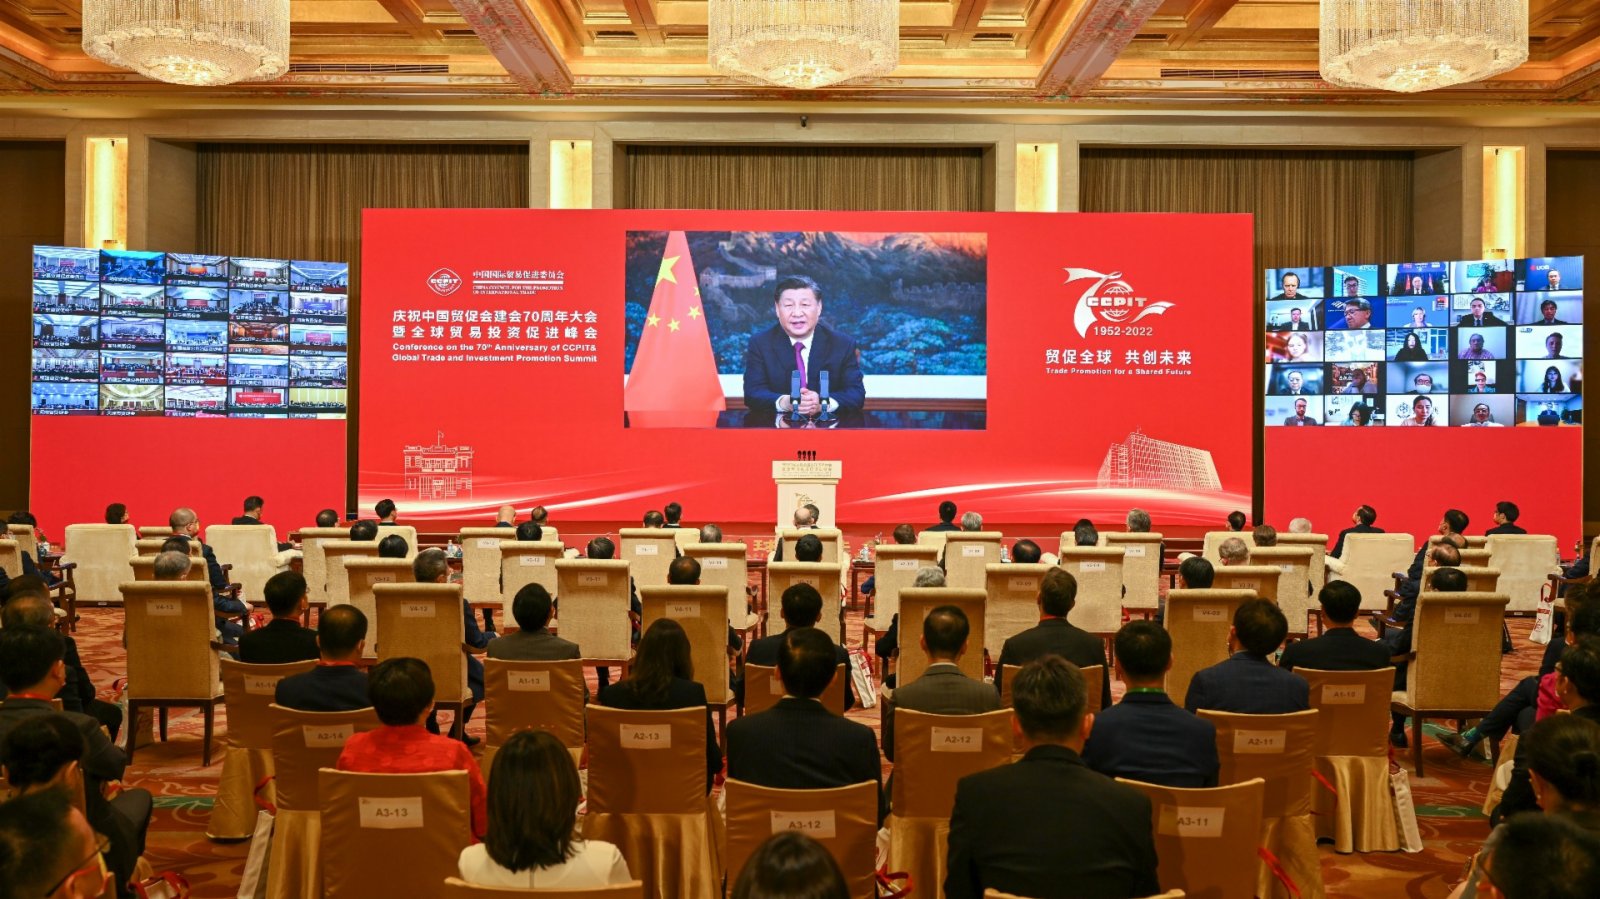 習近平在慶祝中國國際貿易促進委員會建會70周年大會發表視頻致辭